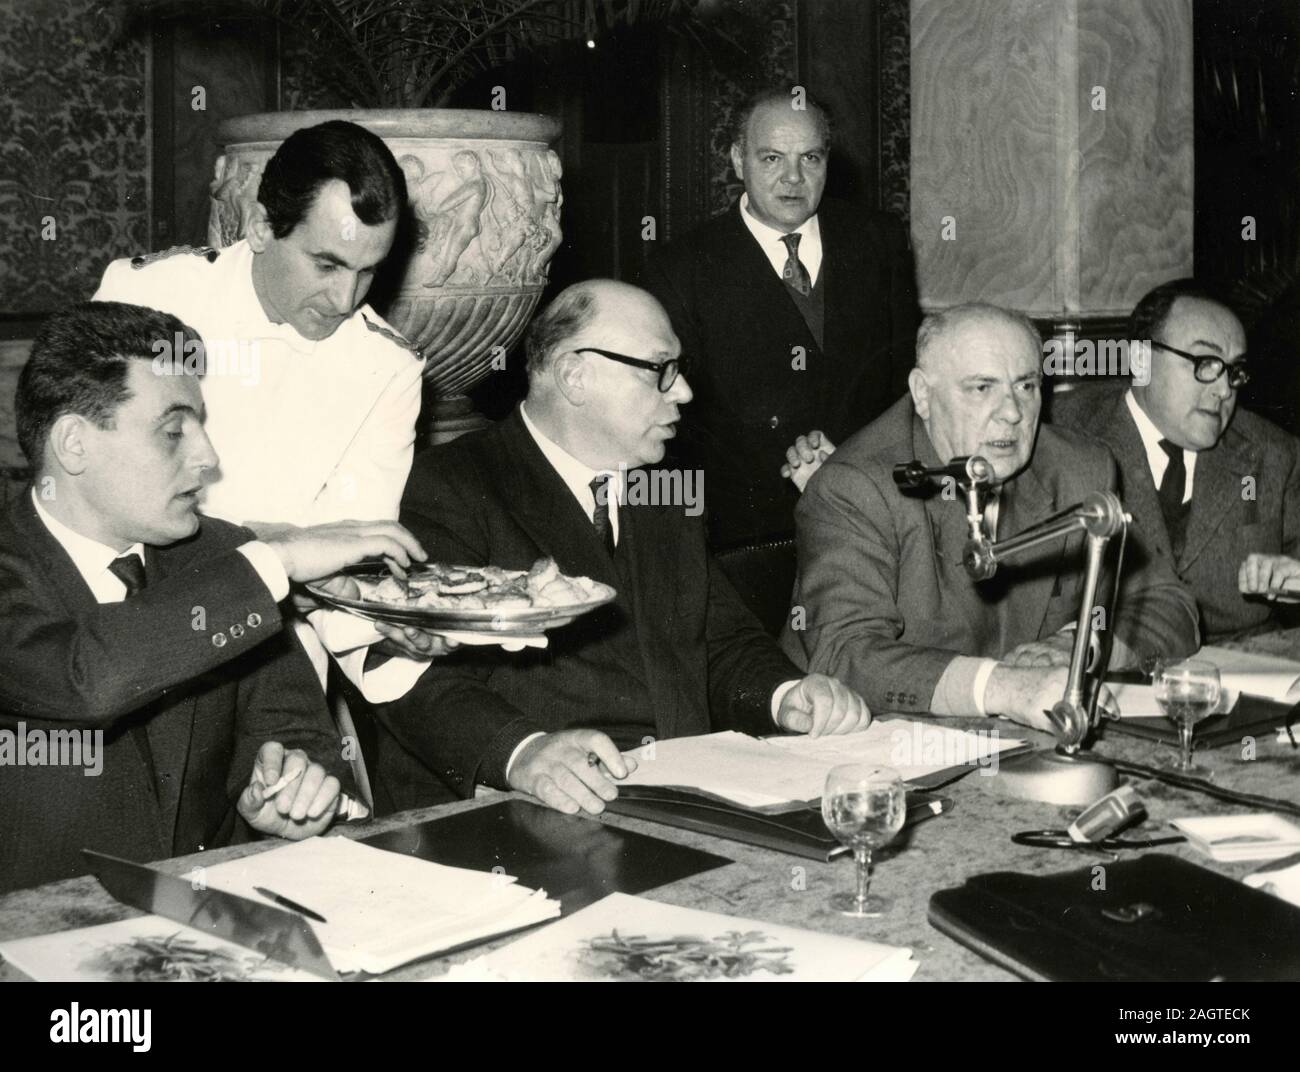 Les politiciens italiens Luciano Romagnoli, Agostino Novella, et Vittorio Foà lors d'une conférence de presse, Rome, Italie 1960 Banque D'Images